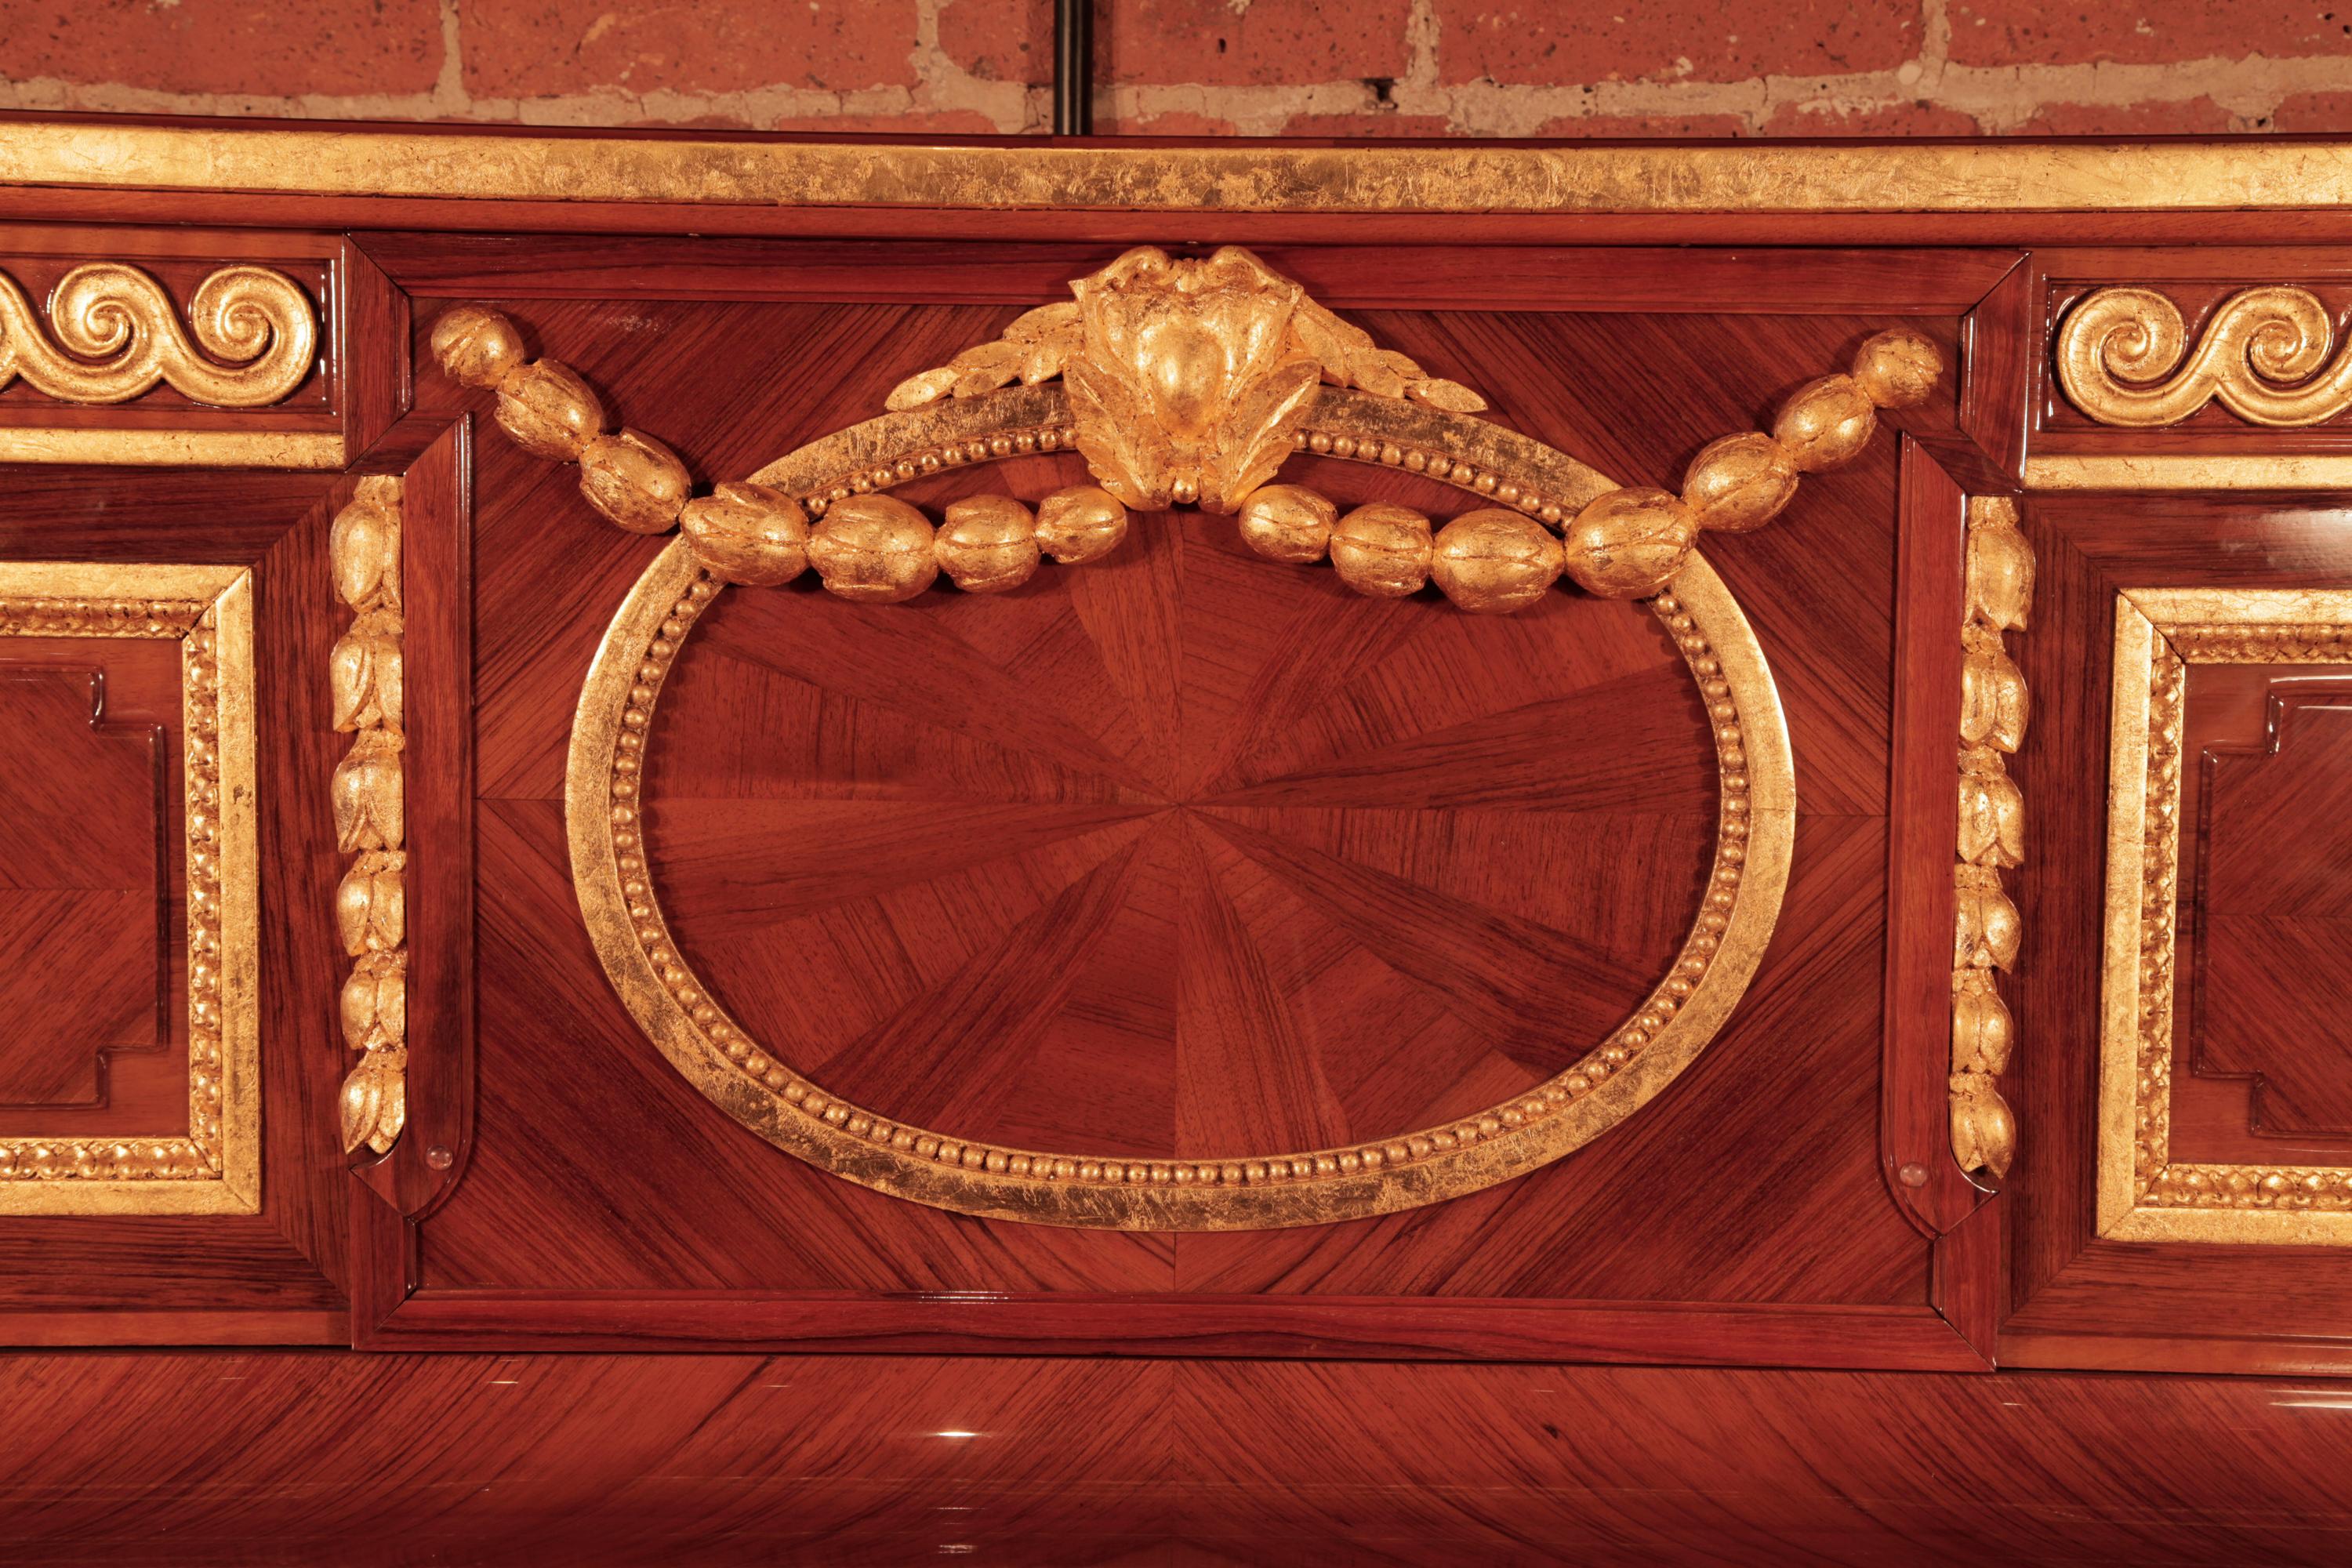 Rekonstruiertes Steinway Vertegrand Klavier von 1912 mit einem geviertelten Nussbaumgehäuse im Louis XVI Stil. Der Schrank ist mit kunstvollen Schnitzereien versehen, die mit Blattgold verziert sind. 
In der Mitte befindet sich ein Oval, das mit